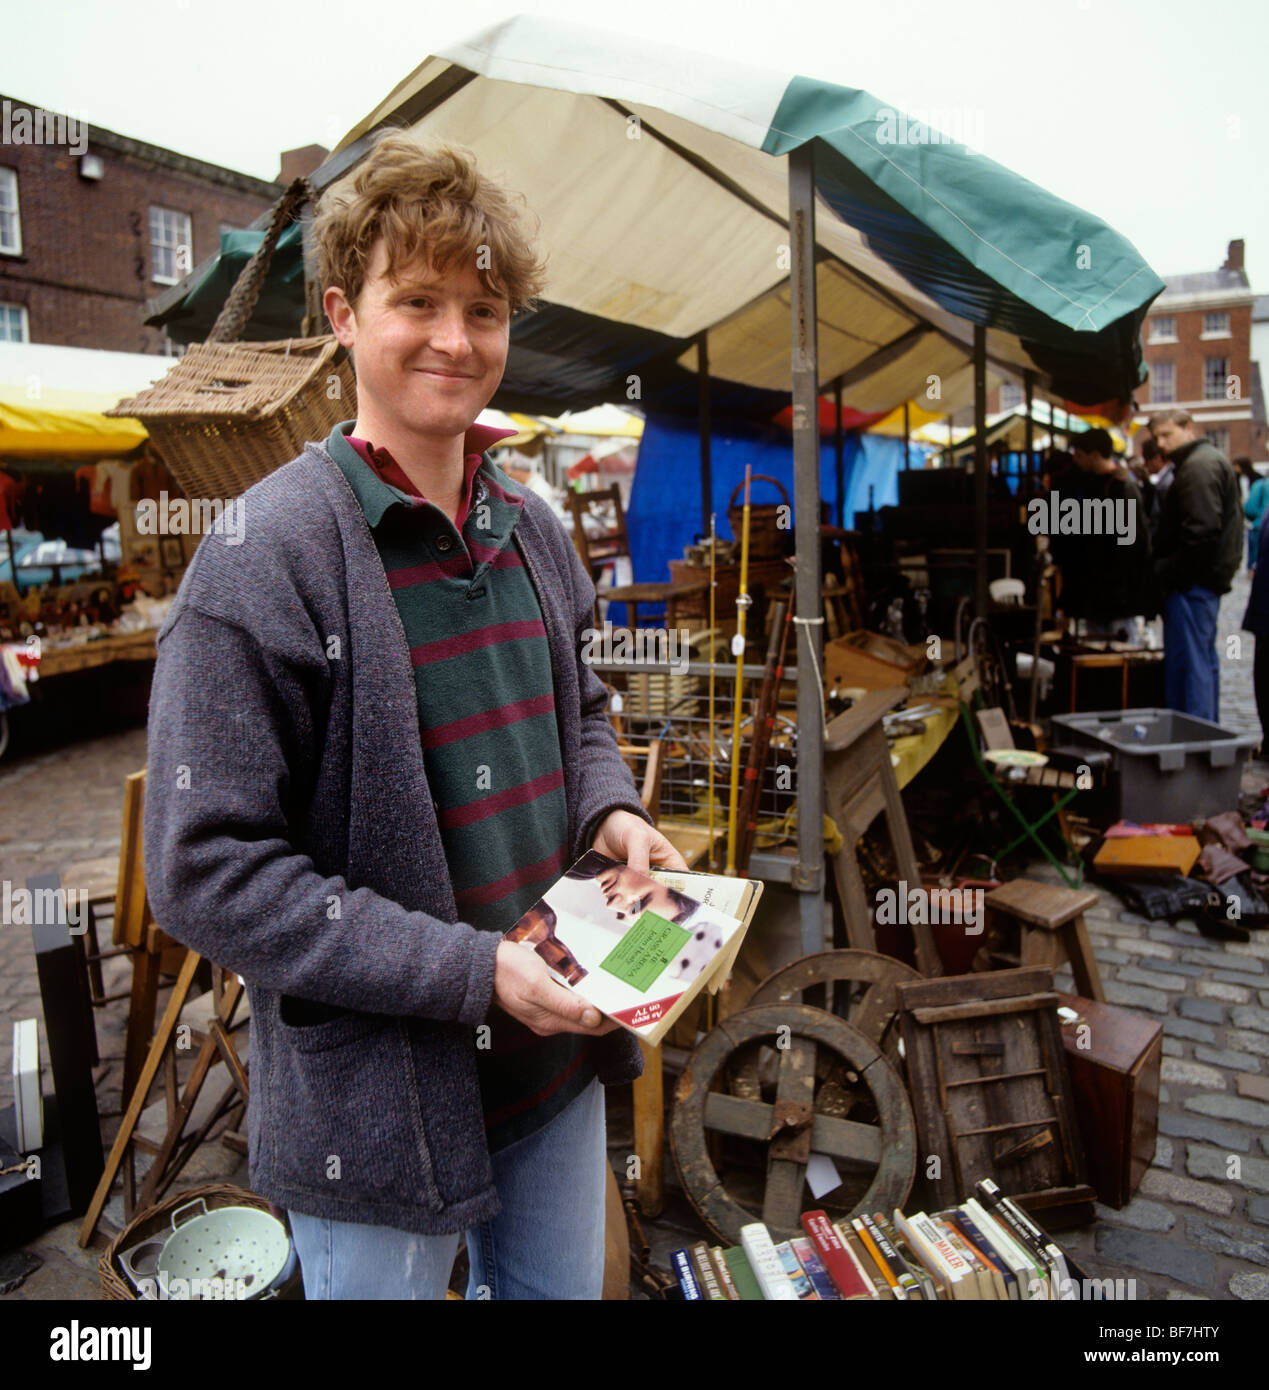 UK, England, Staffordshire, Leek, market trader Fergus Lees Stock Photo -  Alamy